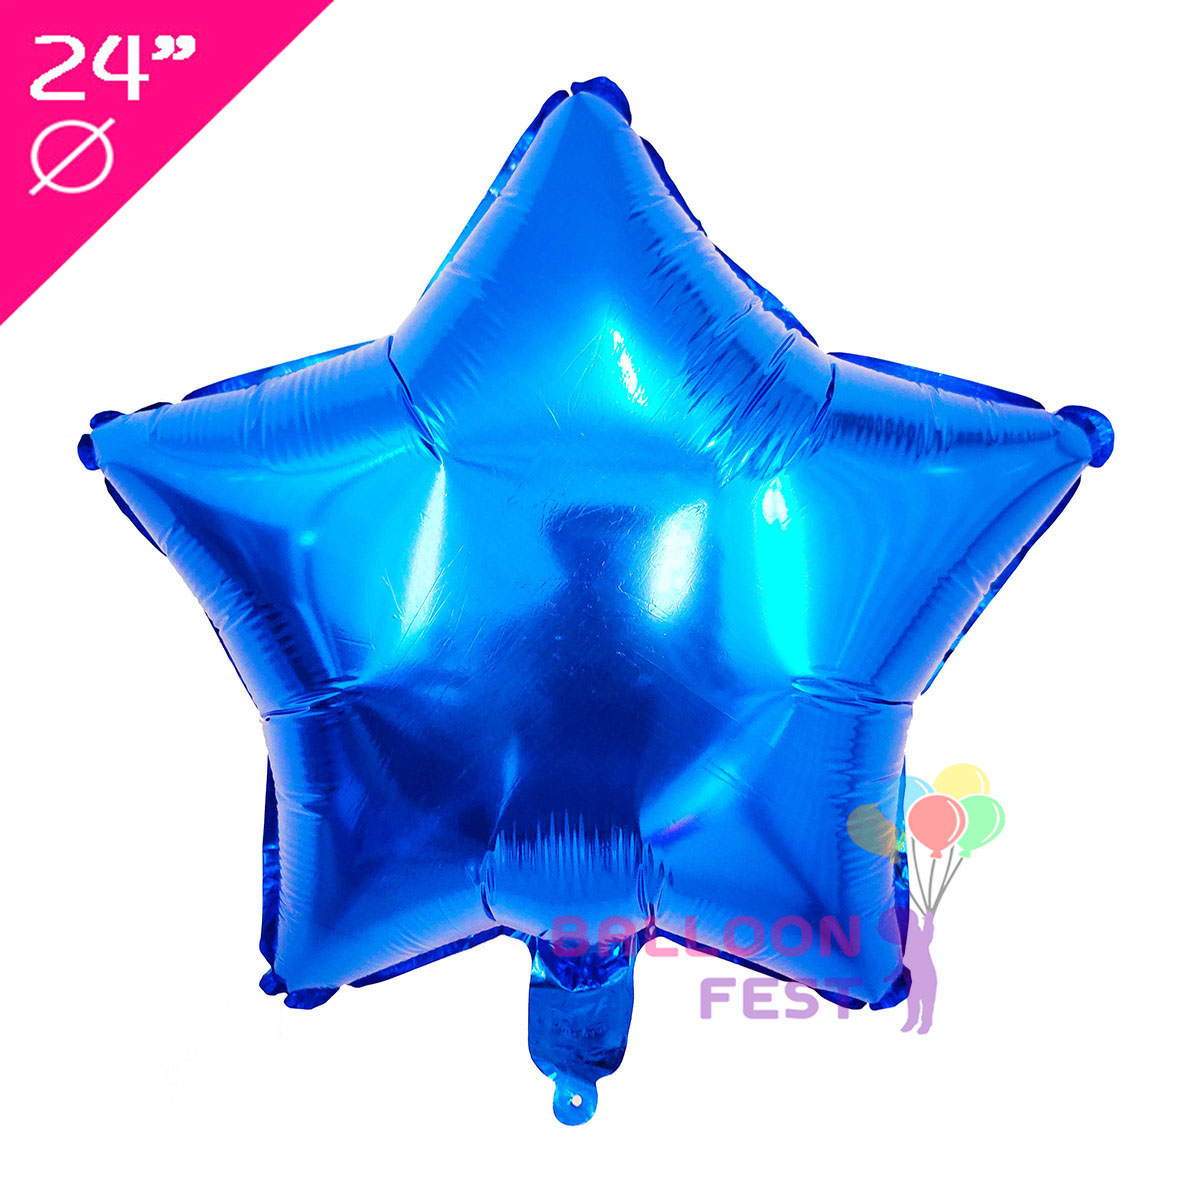 Balloon Fest ลูกโป่งฟอยล์ ดาว ขนาด 24 นิ้ว สีสะท้อนแสง สี สีน้ำเงิน